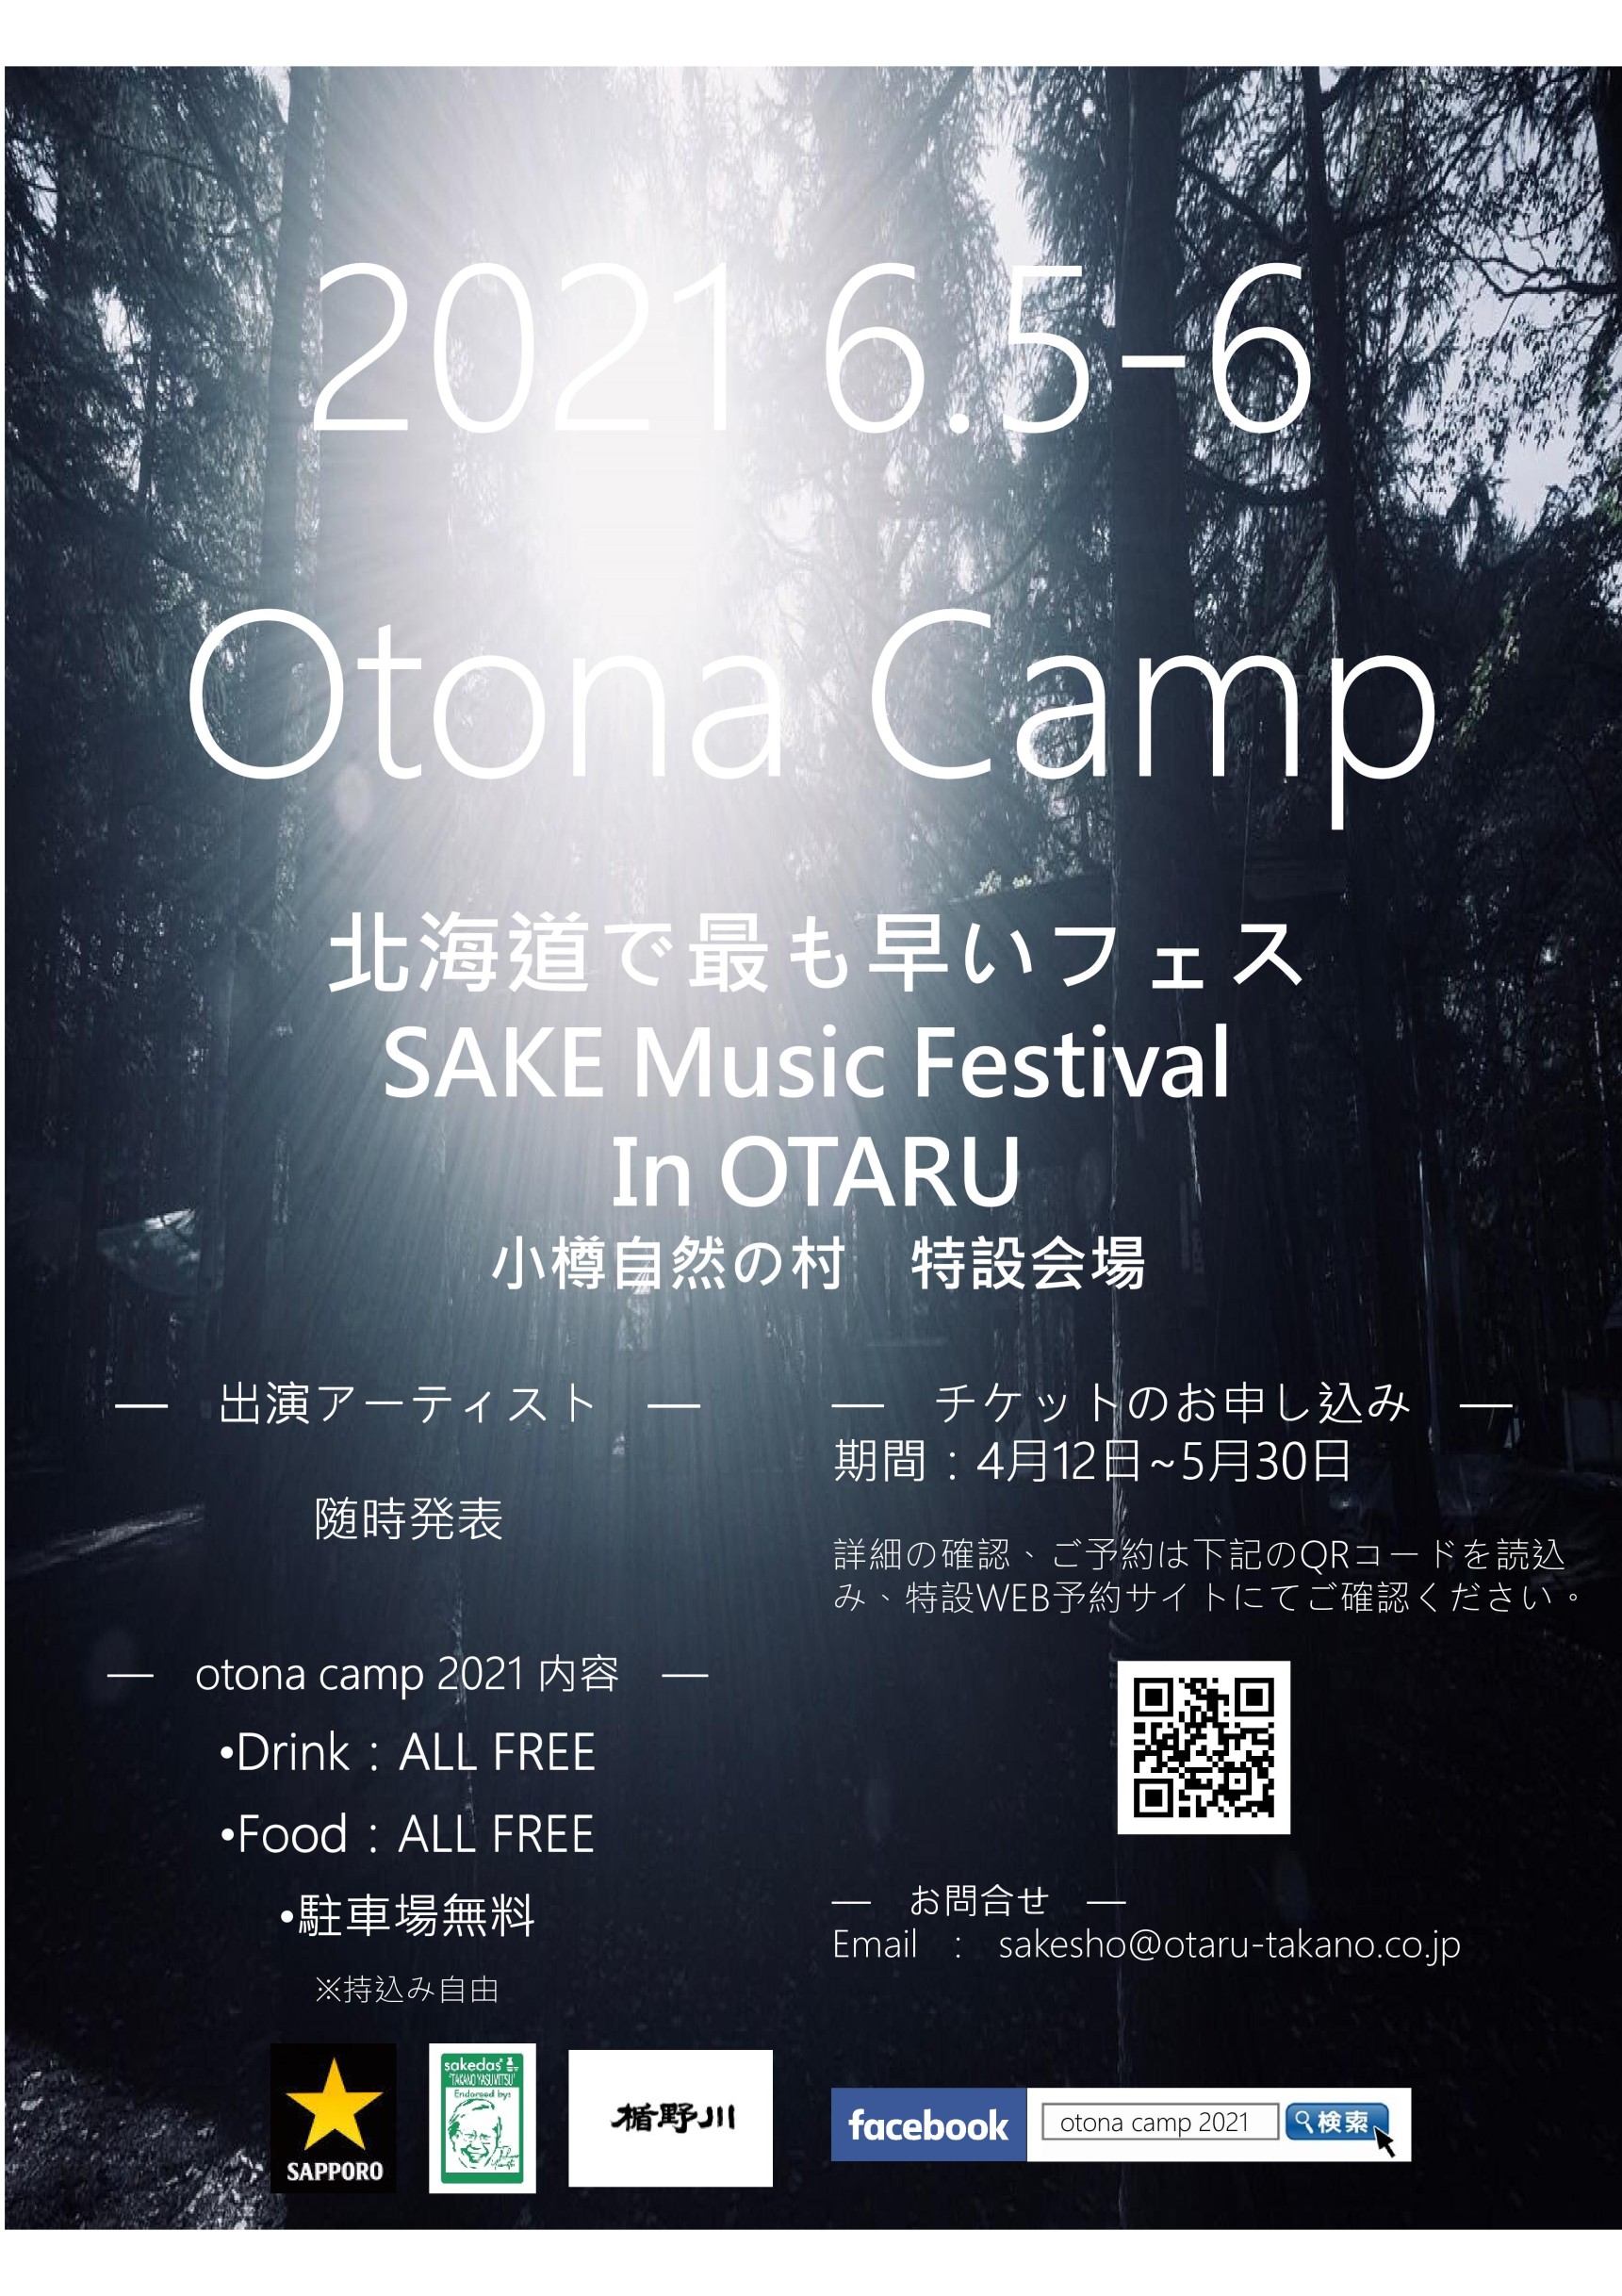 【Otona Camp 2021】